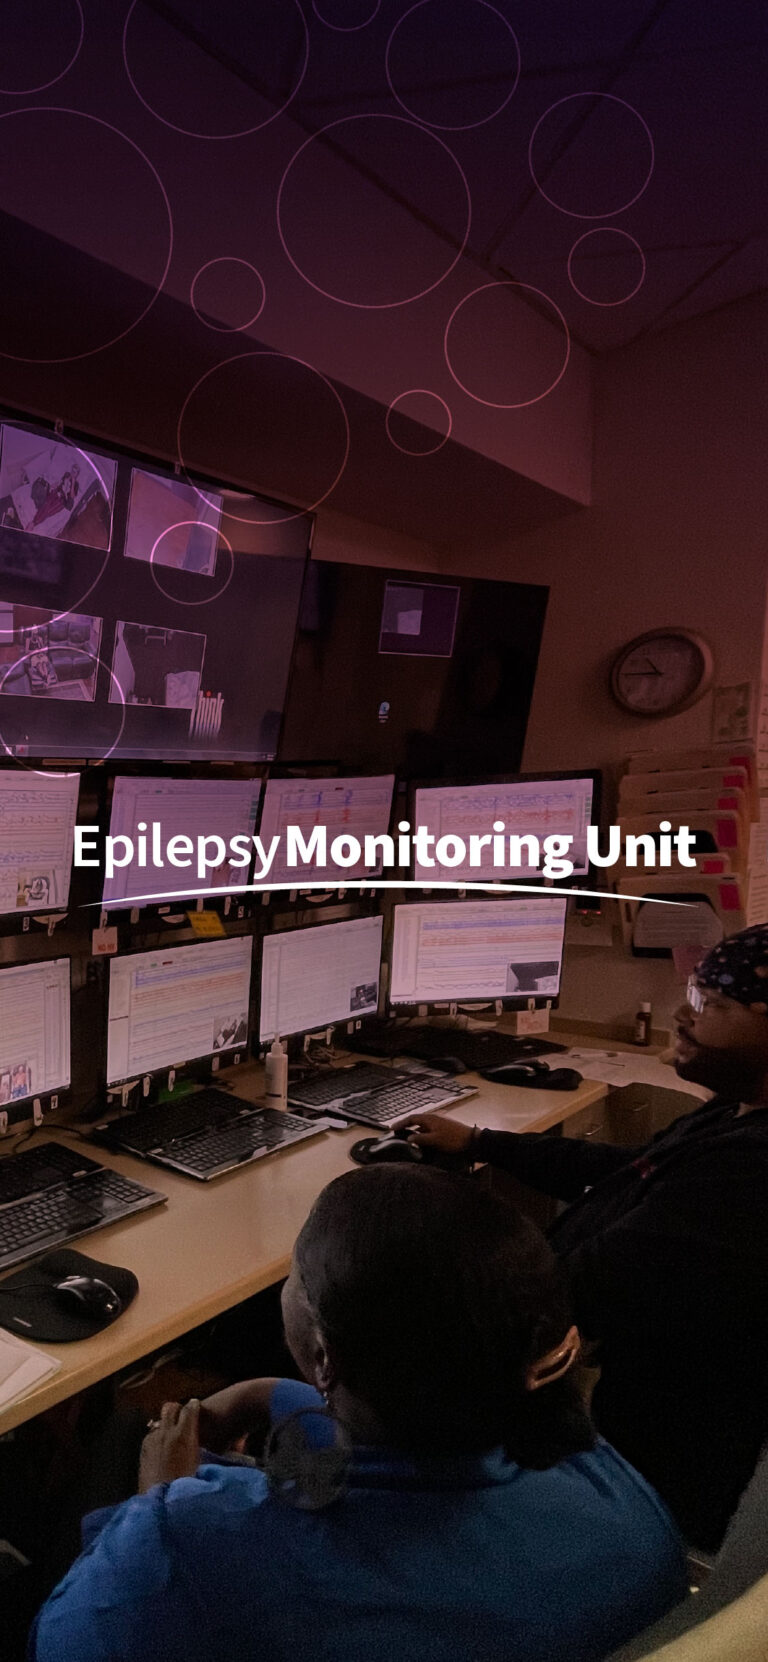 Epilepsy Monitoring unit